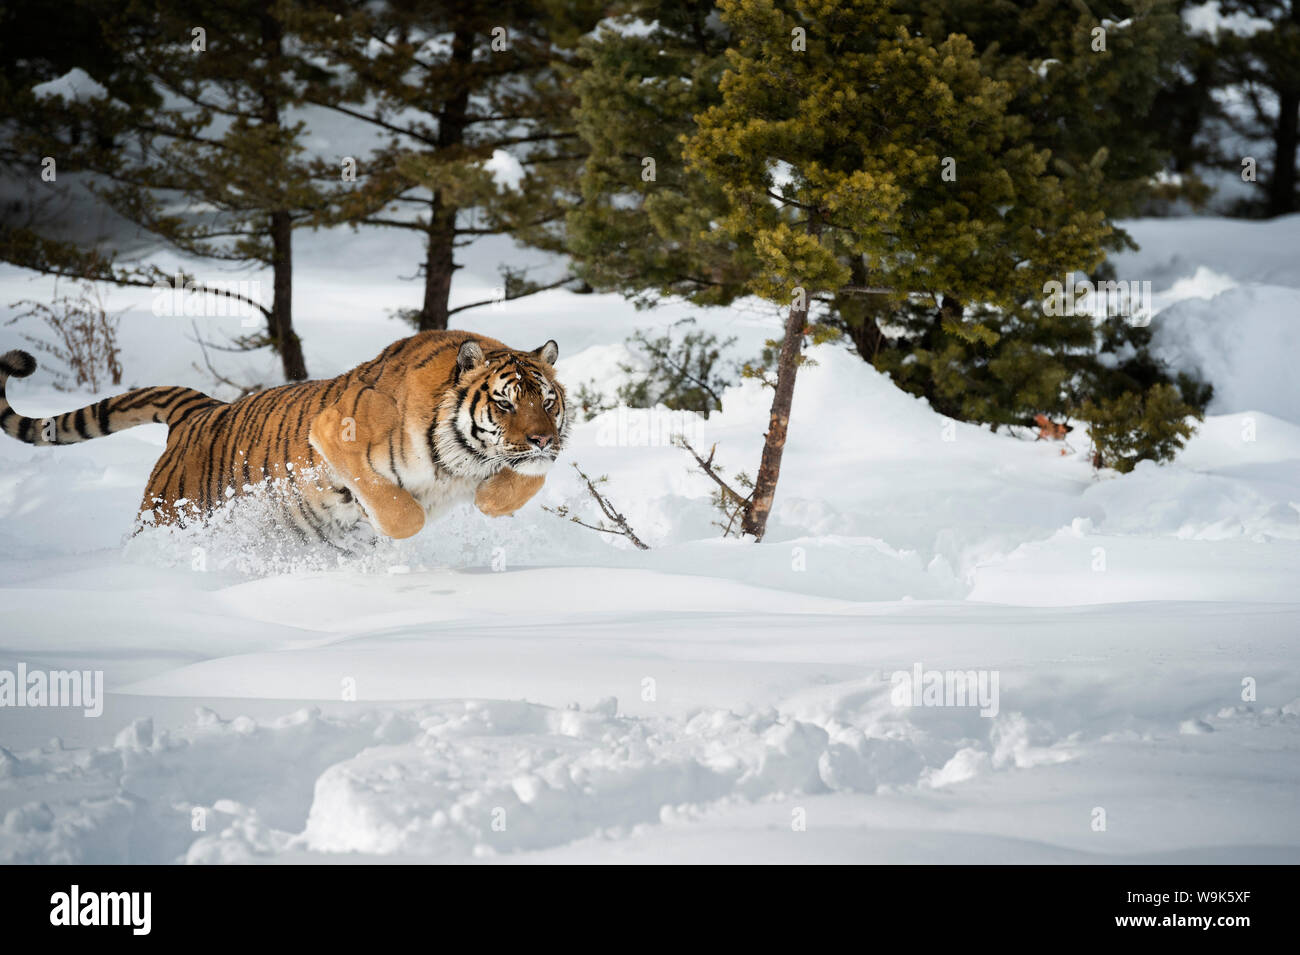 Tigre de Sibérie (Panthera tigris altaica), Montana, États-Unis d'Amérique, Amérique du Nord Banque D'Images